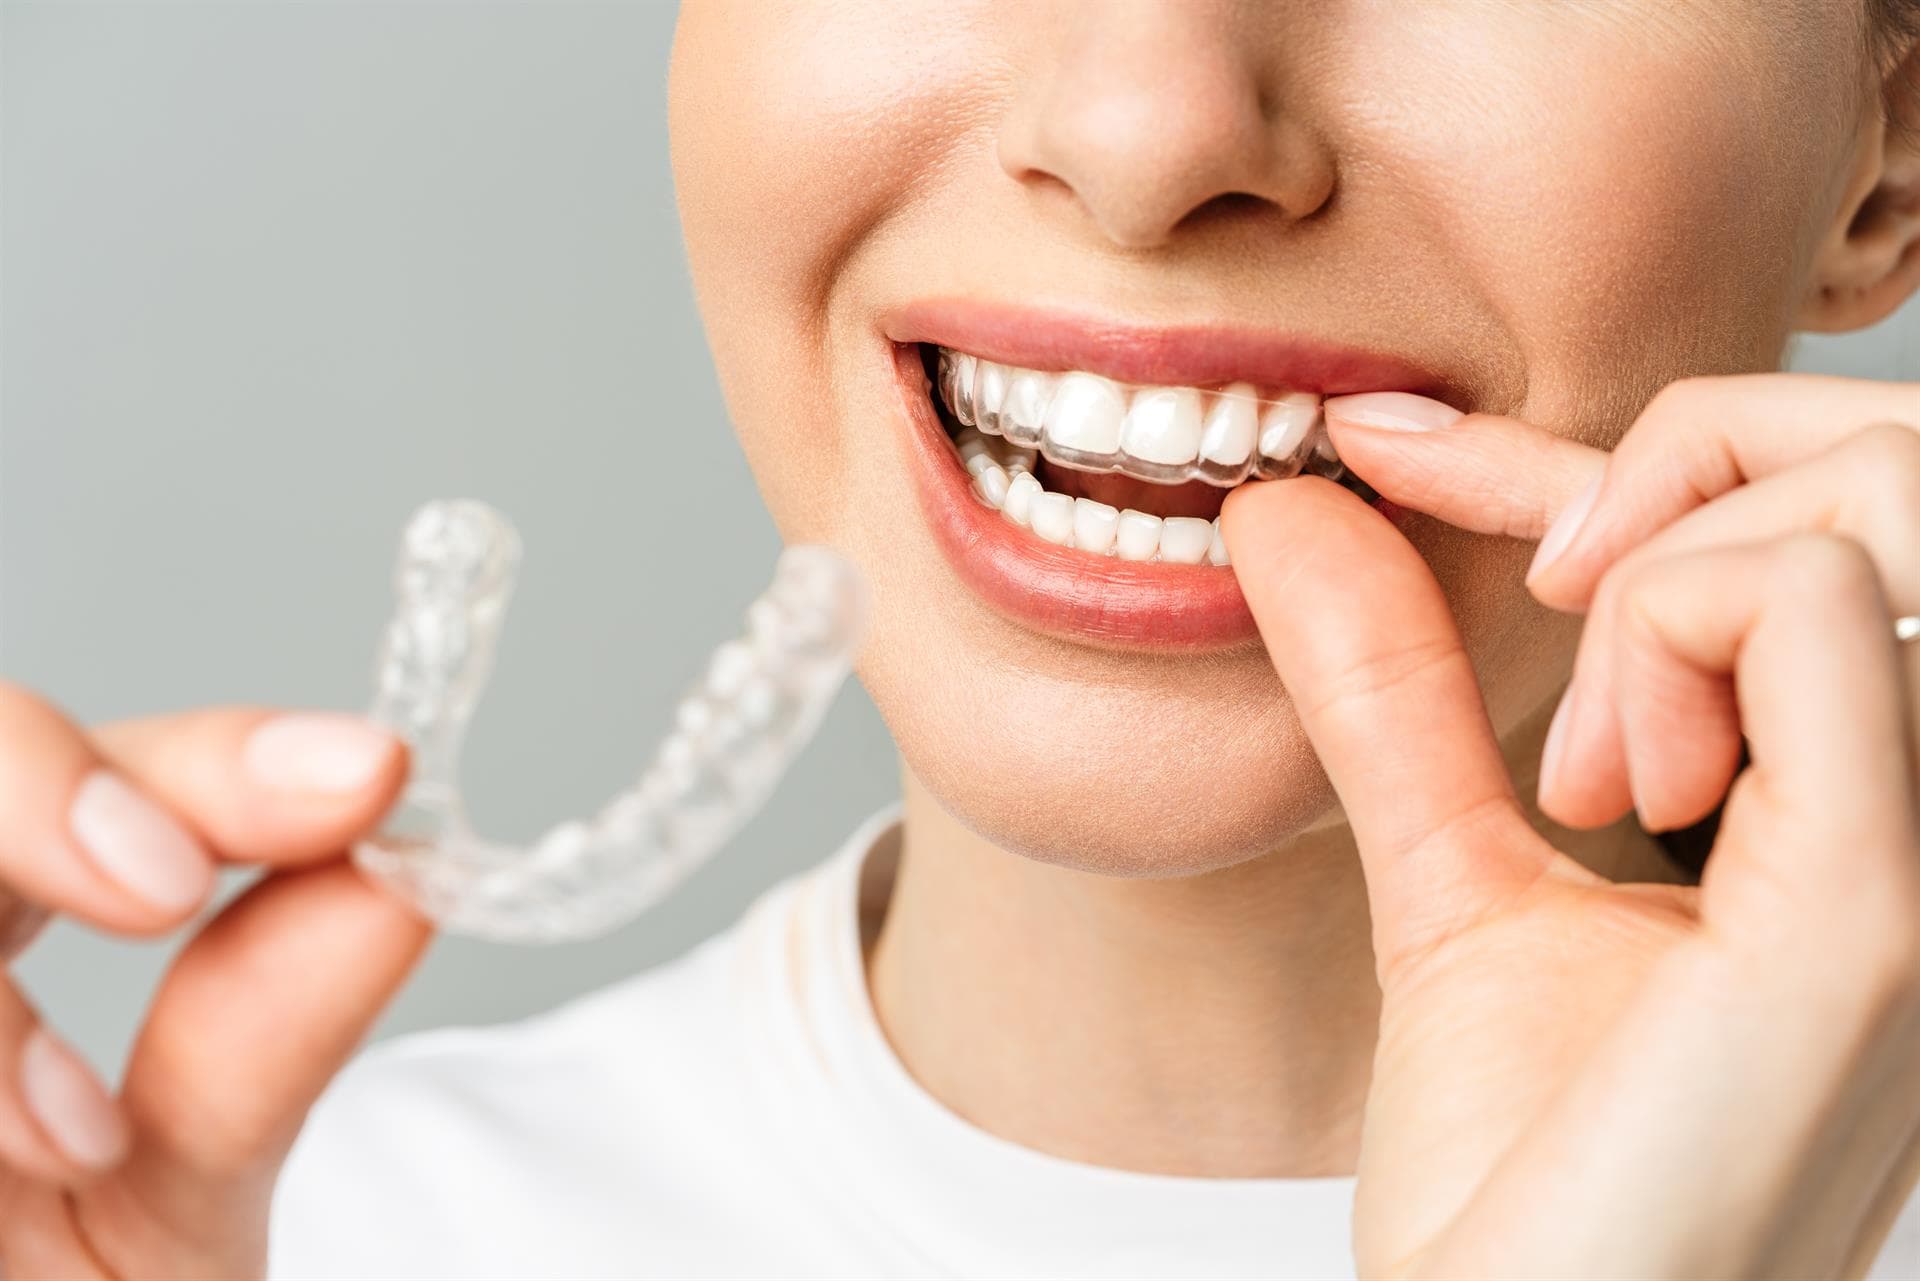  Opta por la ortodoncia invisible para corregir tu sonrisa